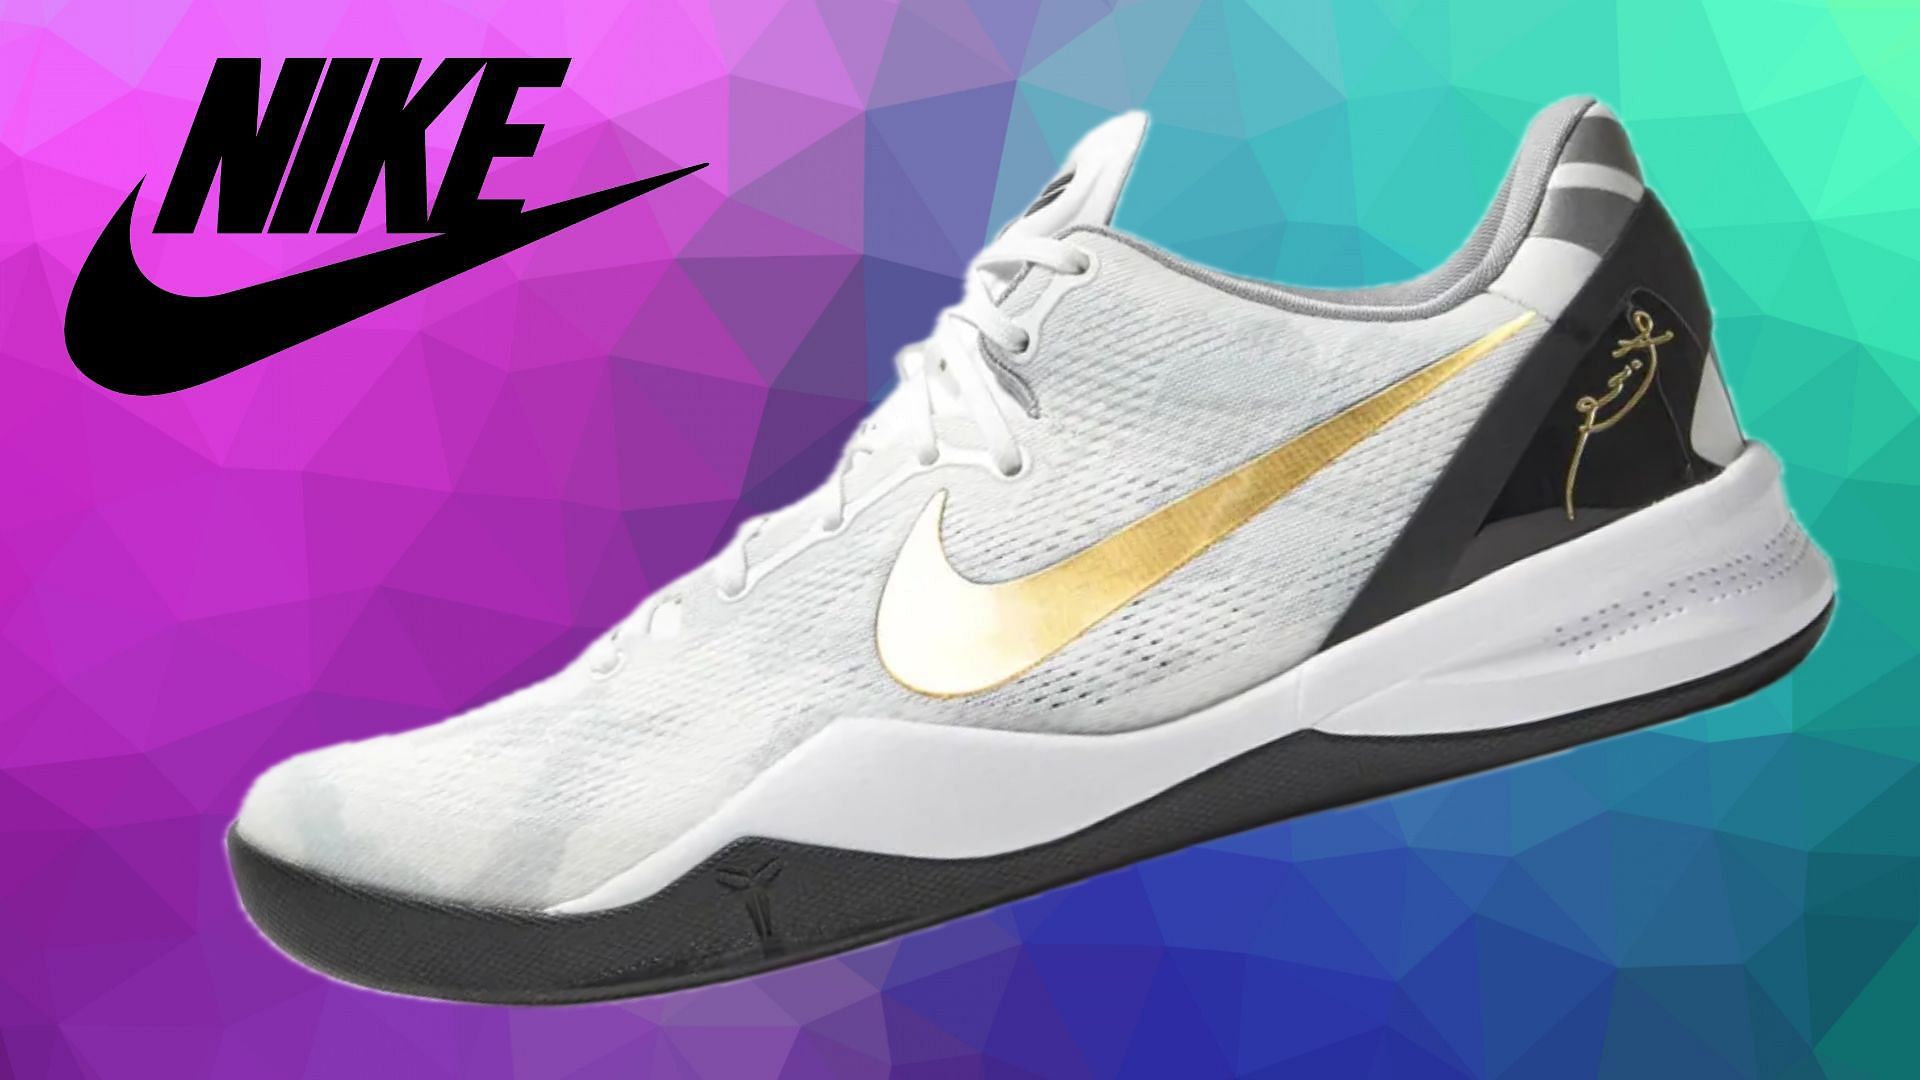 Nike Kobe 8 Protro: Nike Kobe 8 Protro “White Metallic Gold Black